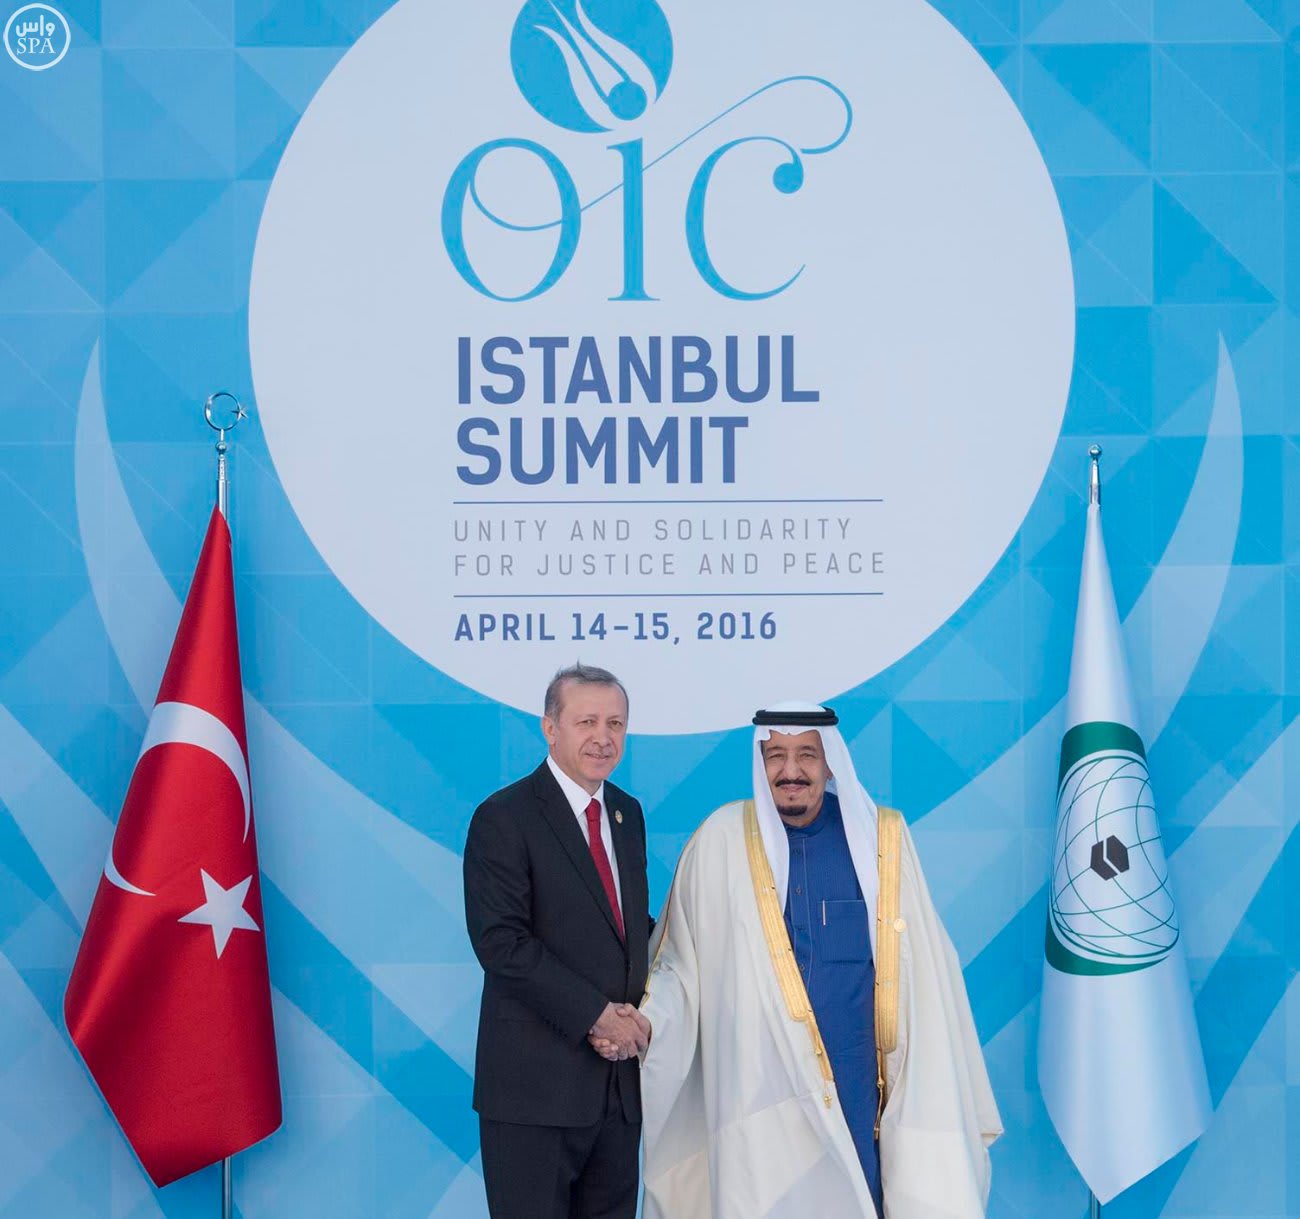 الملك سلمان بالقمة الإسلامية بتركيا: التحالف الإسلامي العسكري خطوة جادة لحماية الشباب المسلم من الإرهاب